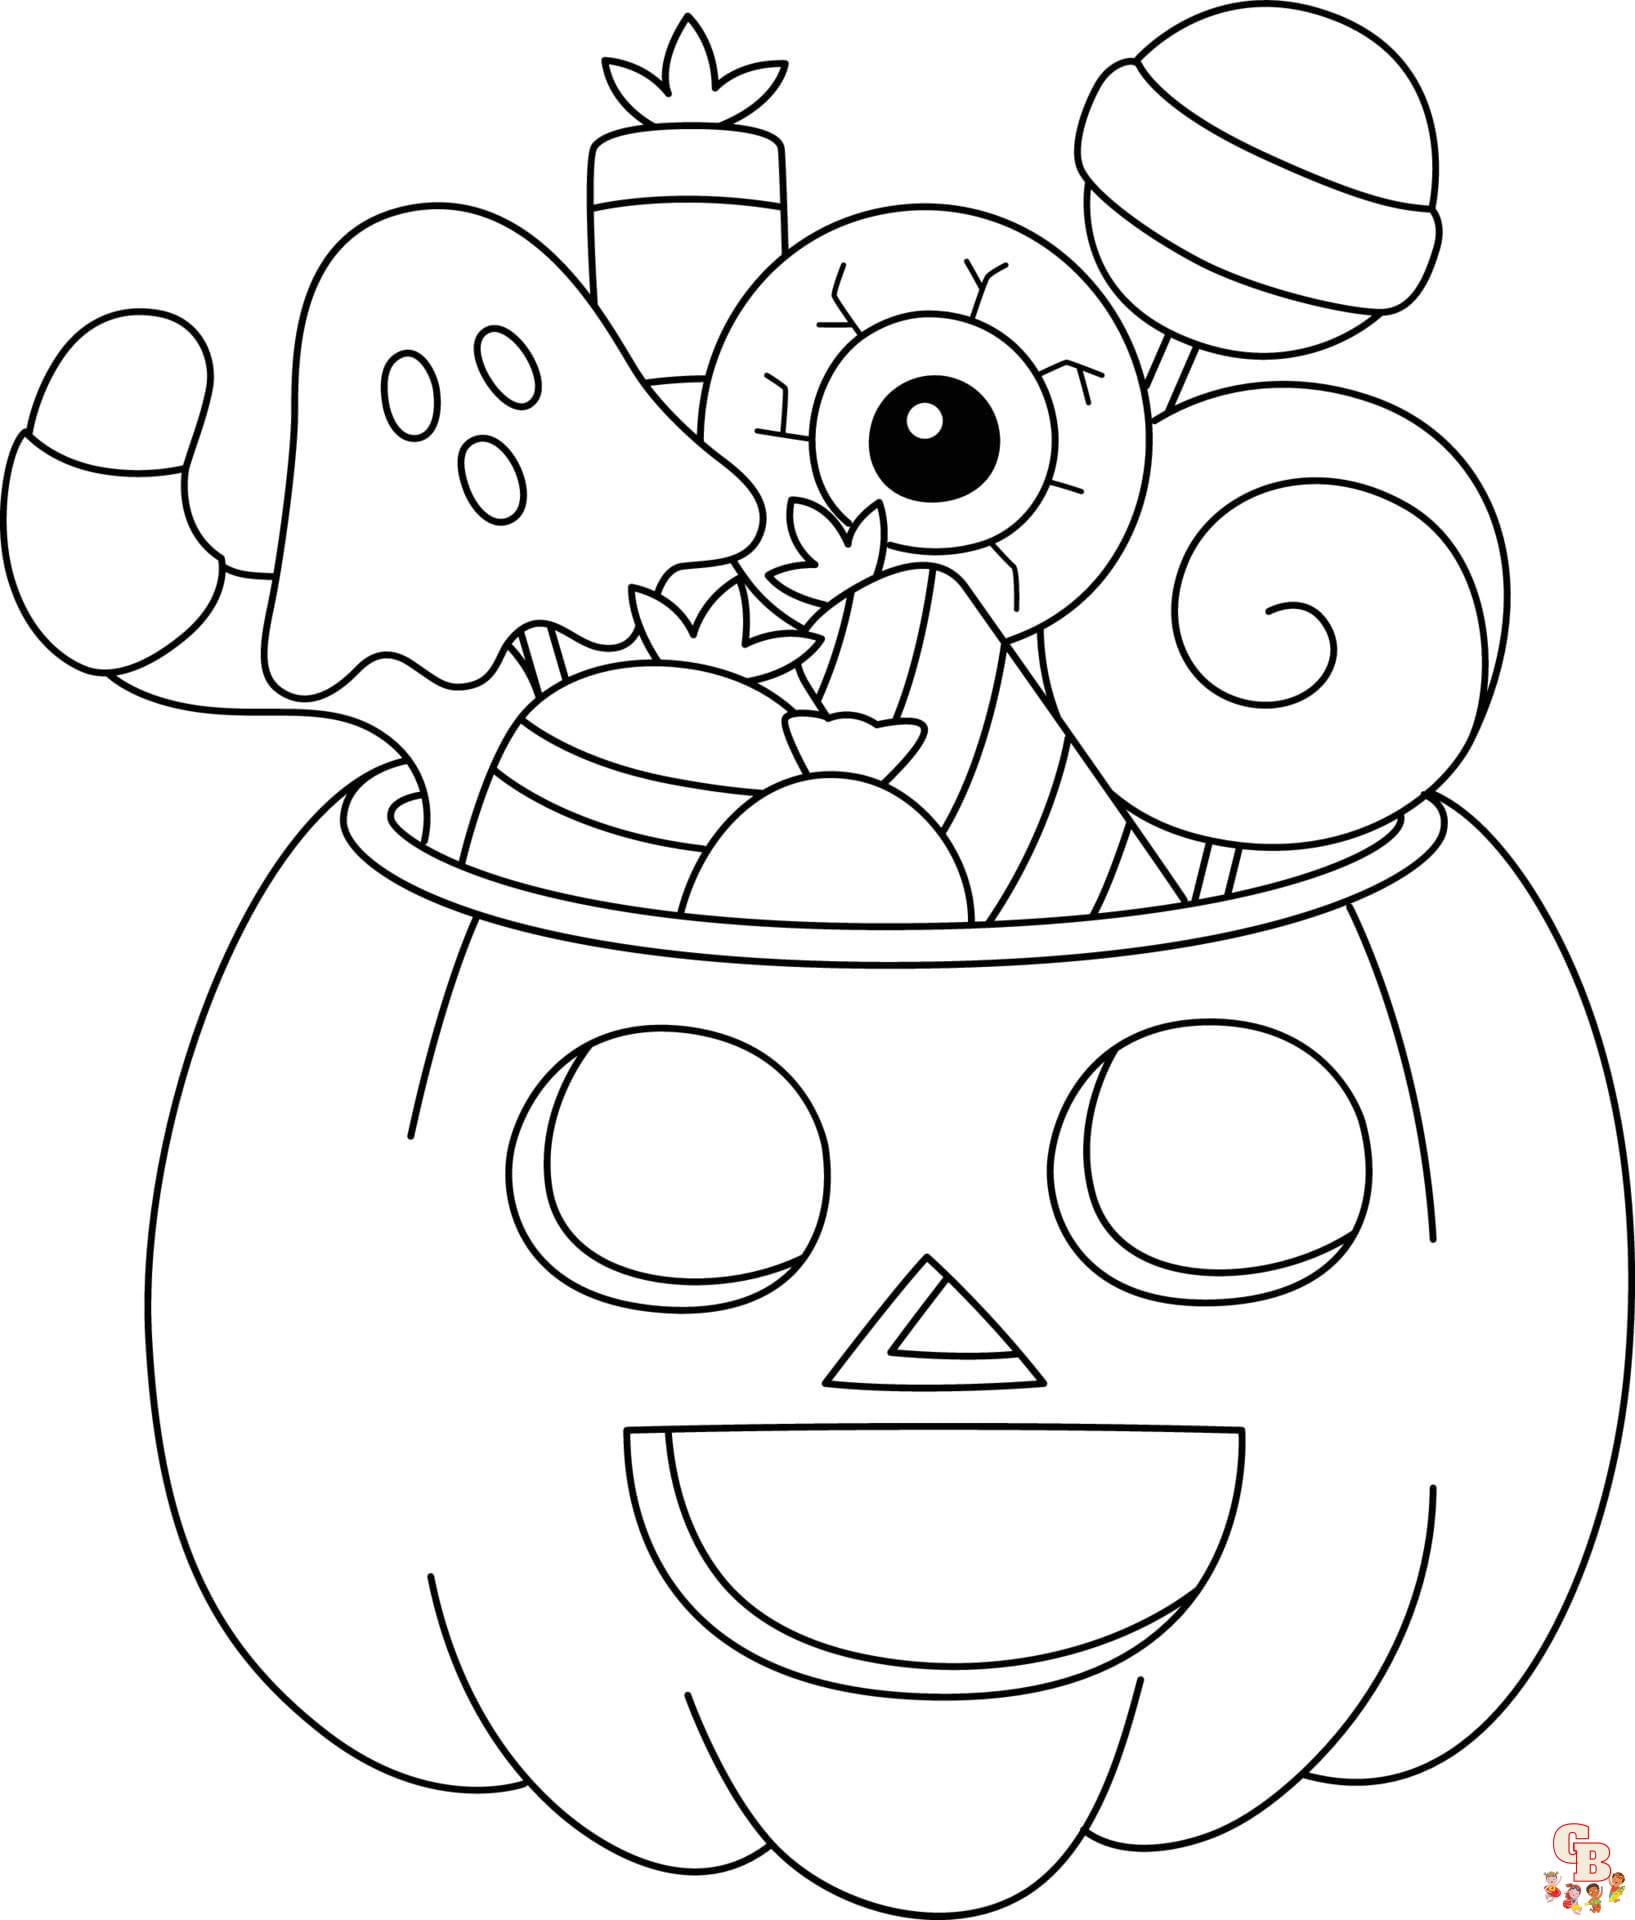 Desenhos de Halloween para colorir para imprimir para crianças - GBcoloring